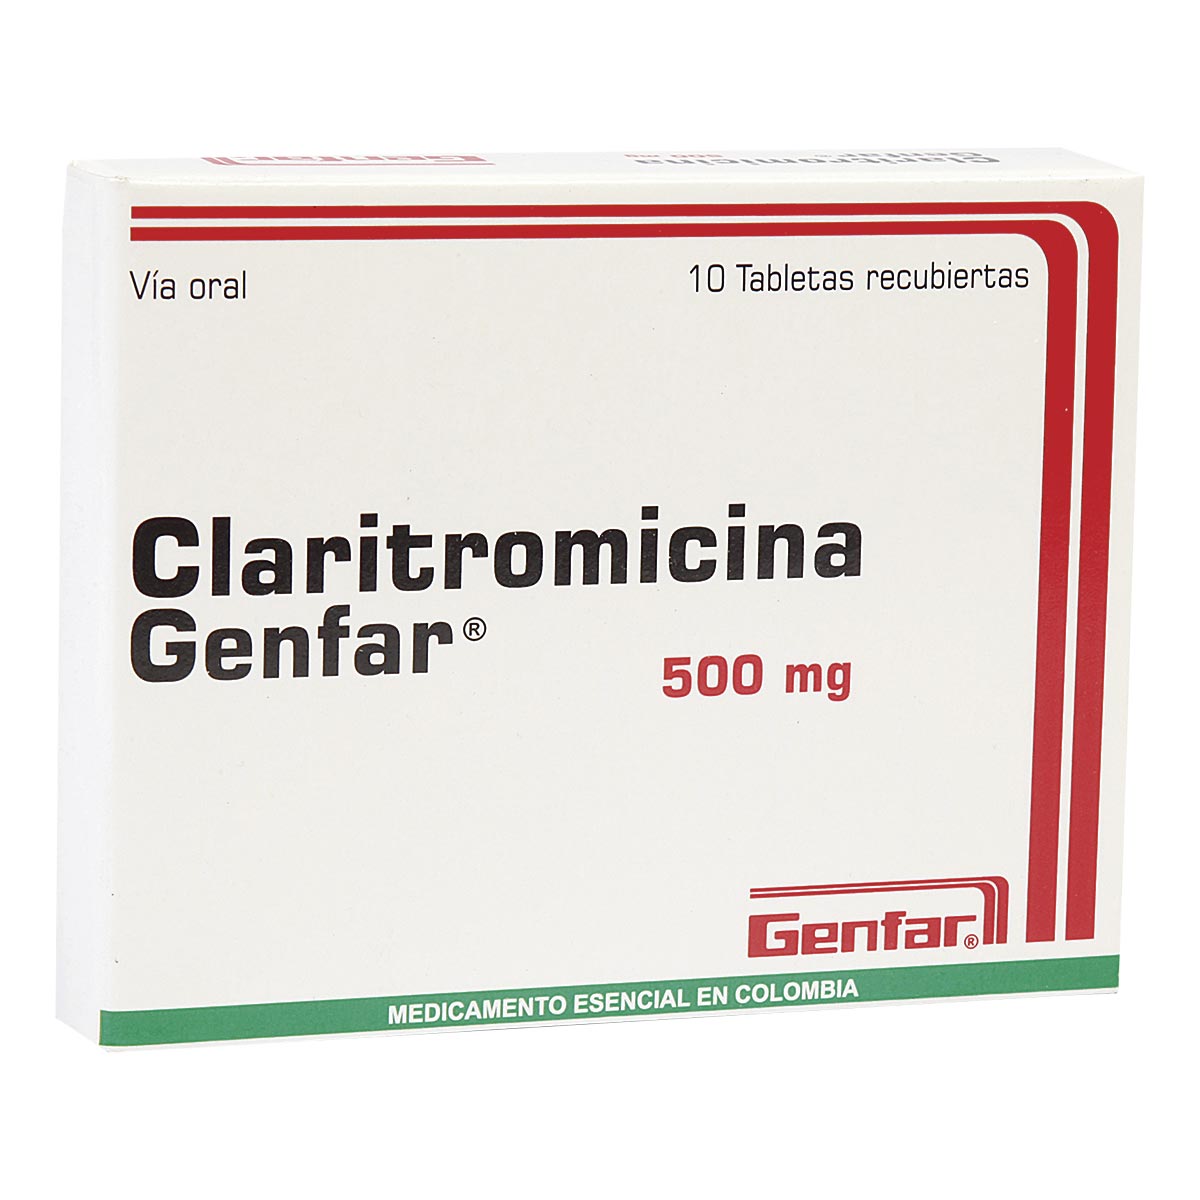 Claritromicina 500 mg Caja Con 10 Tabletas Recubiertas